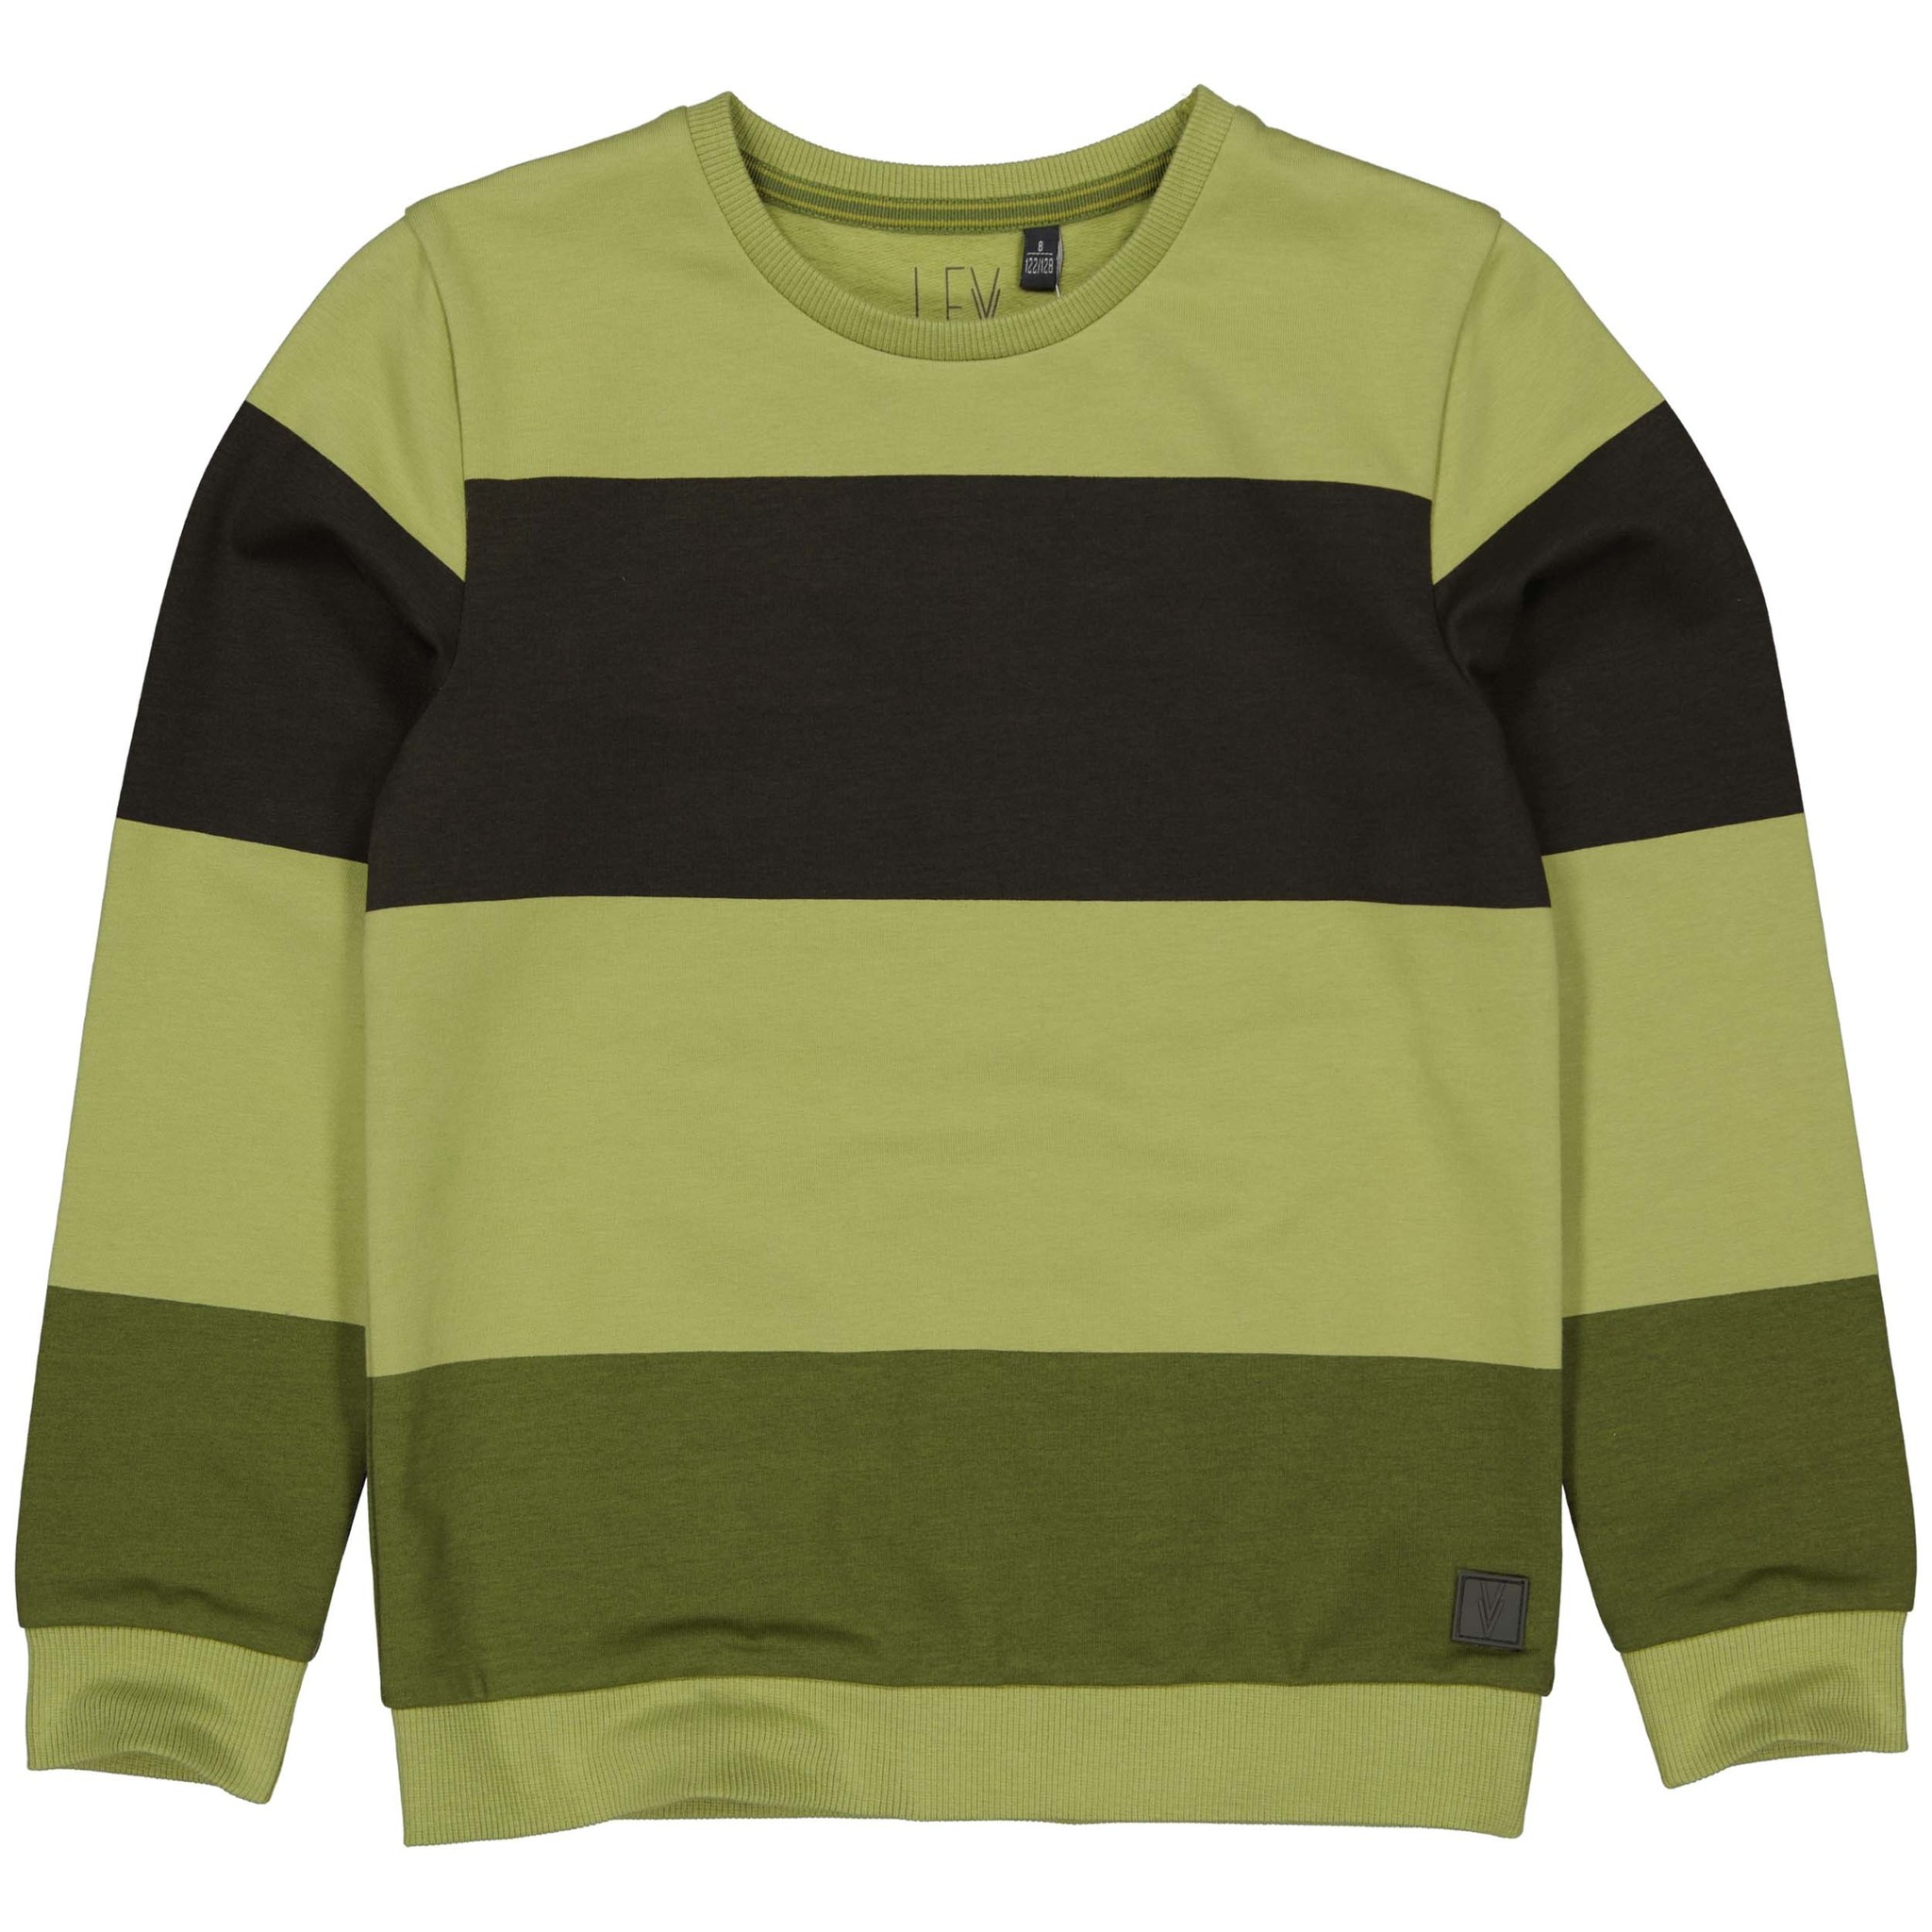 LEVV Jongens sweater - Alwin - AOP olijf streep